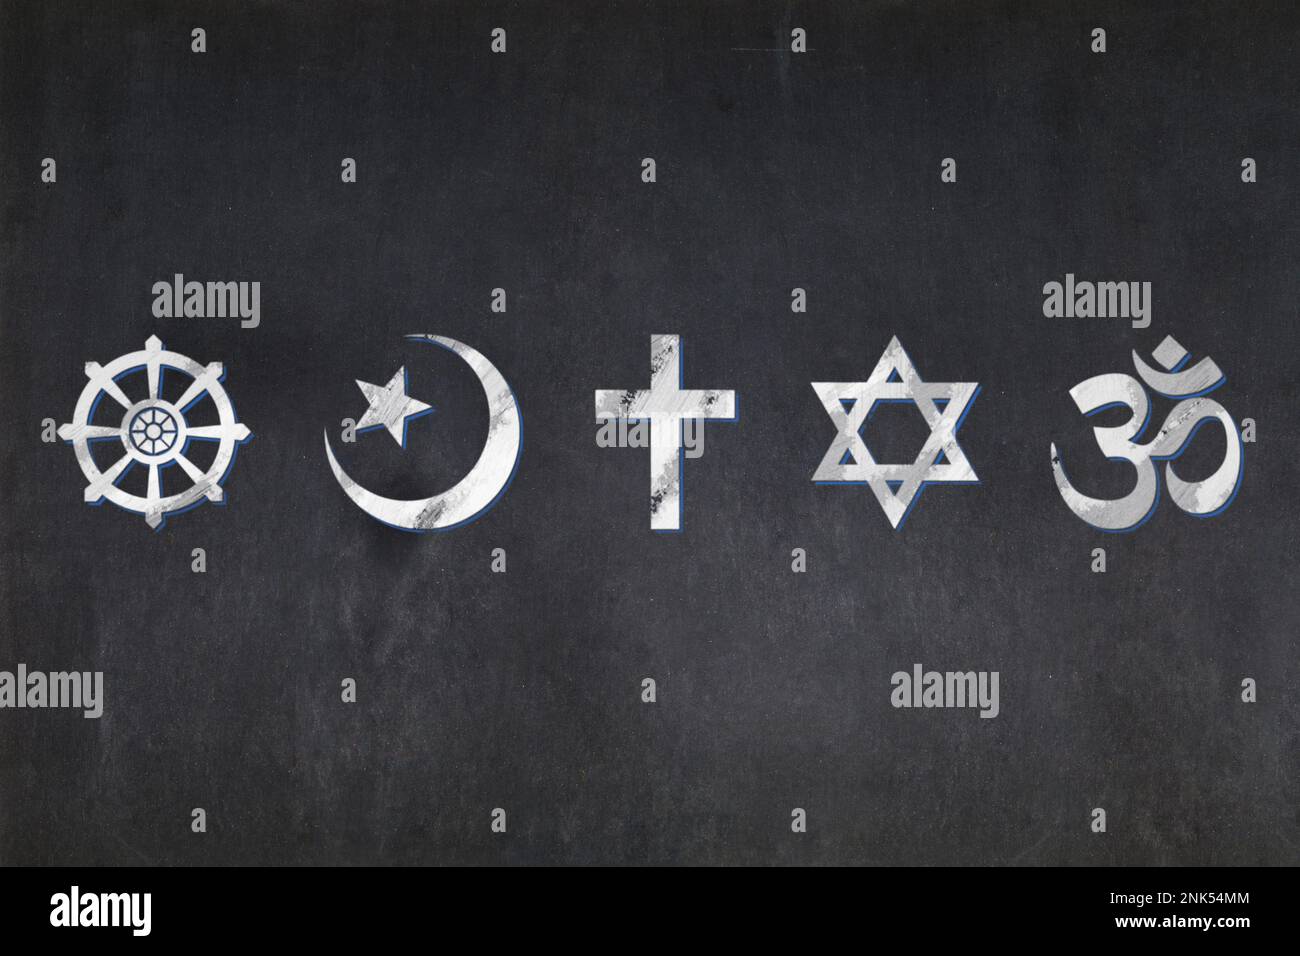 Tableau noir avec les symboles des cinq religions les plus importantes (bouddhisme, islam, christianisme, judaïsme et hindouisme) dessinées au milieu. Banque D'Images